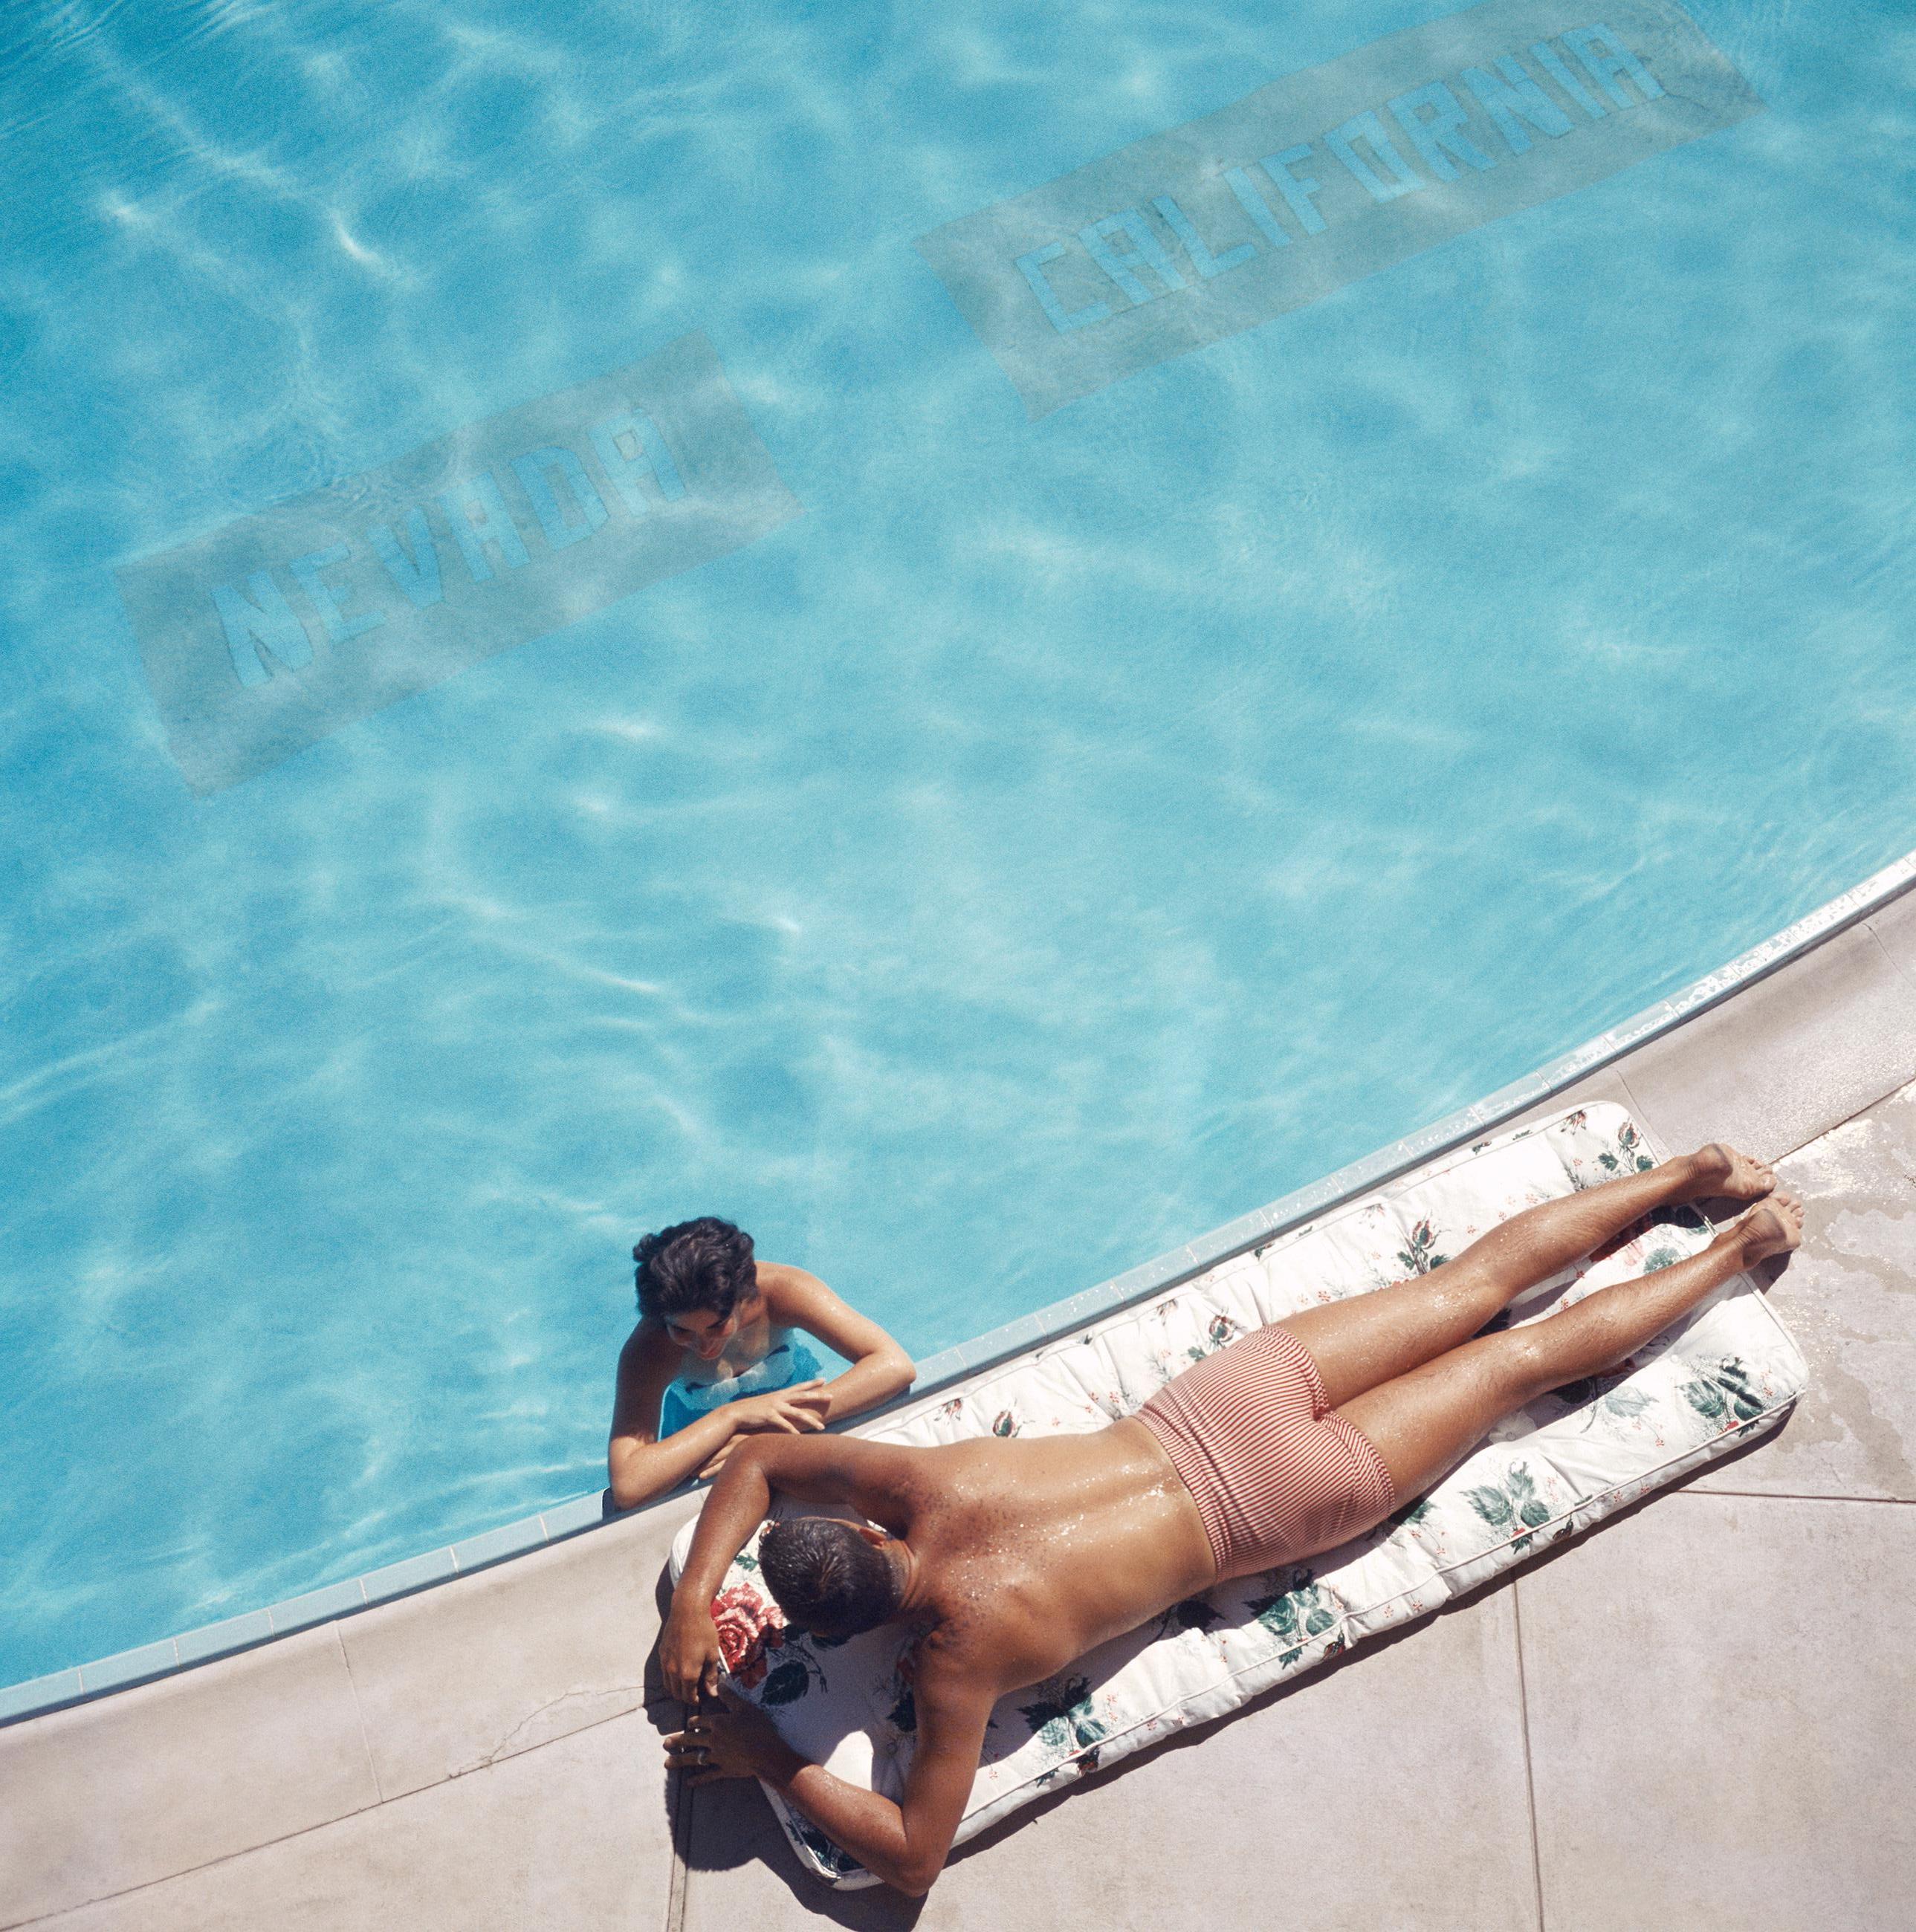 Tahoe-See-Paar
1959
C Druck
Nachlasssignatur gestempelt und handnummerierte Auflage von 150 Stück mit Echtheitszertifikat aus dem Nachlass. 

Ein Paar in einem Schwimmbad in der Nähe des Lake Tahoe, Kalifornien, 1959. Die Linie auf dem Boden des